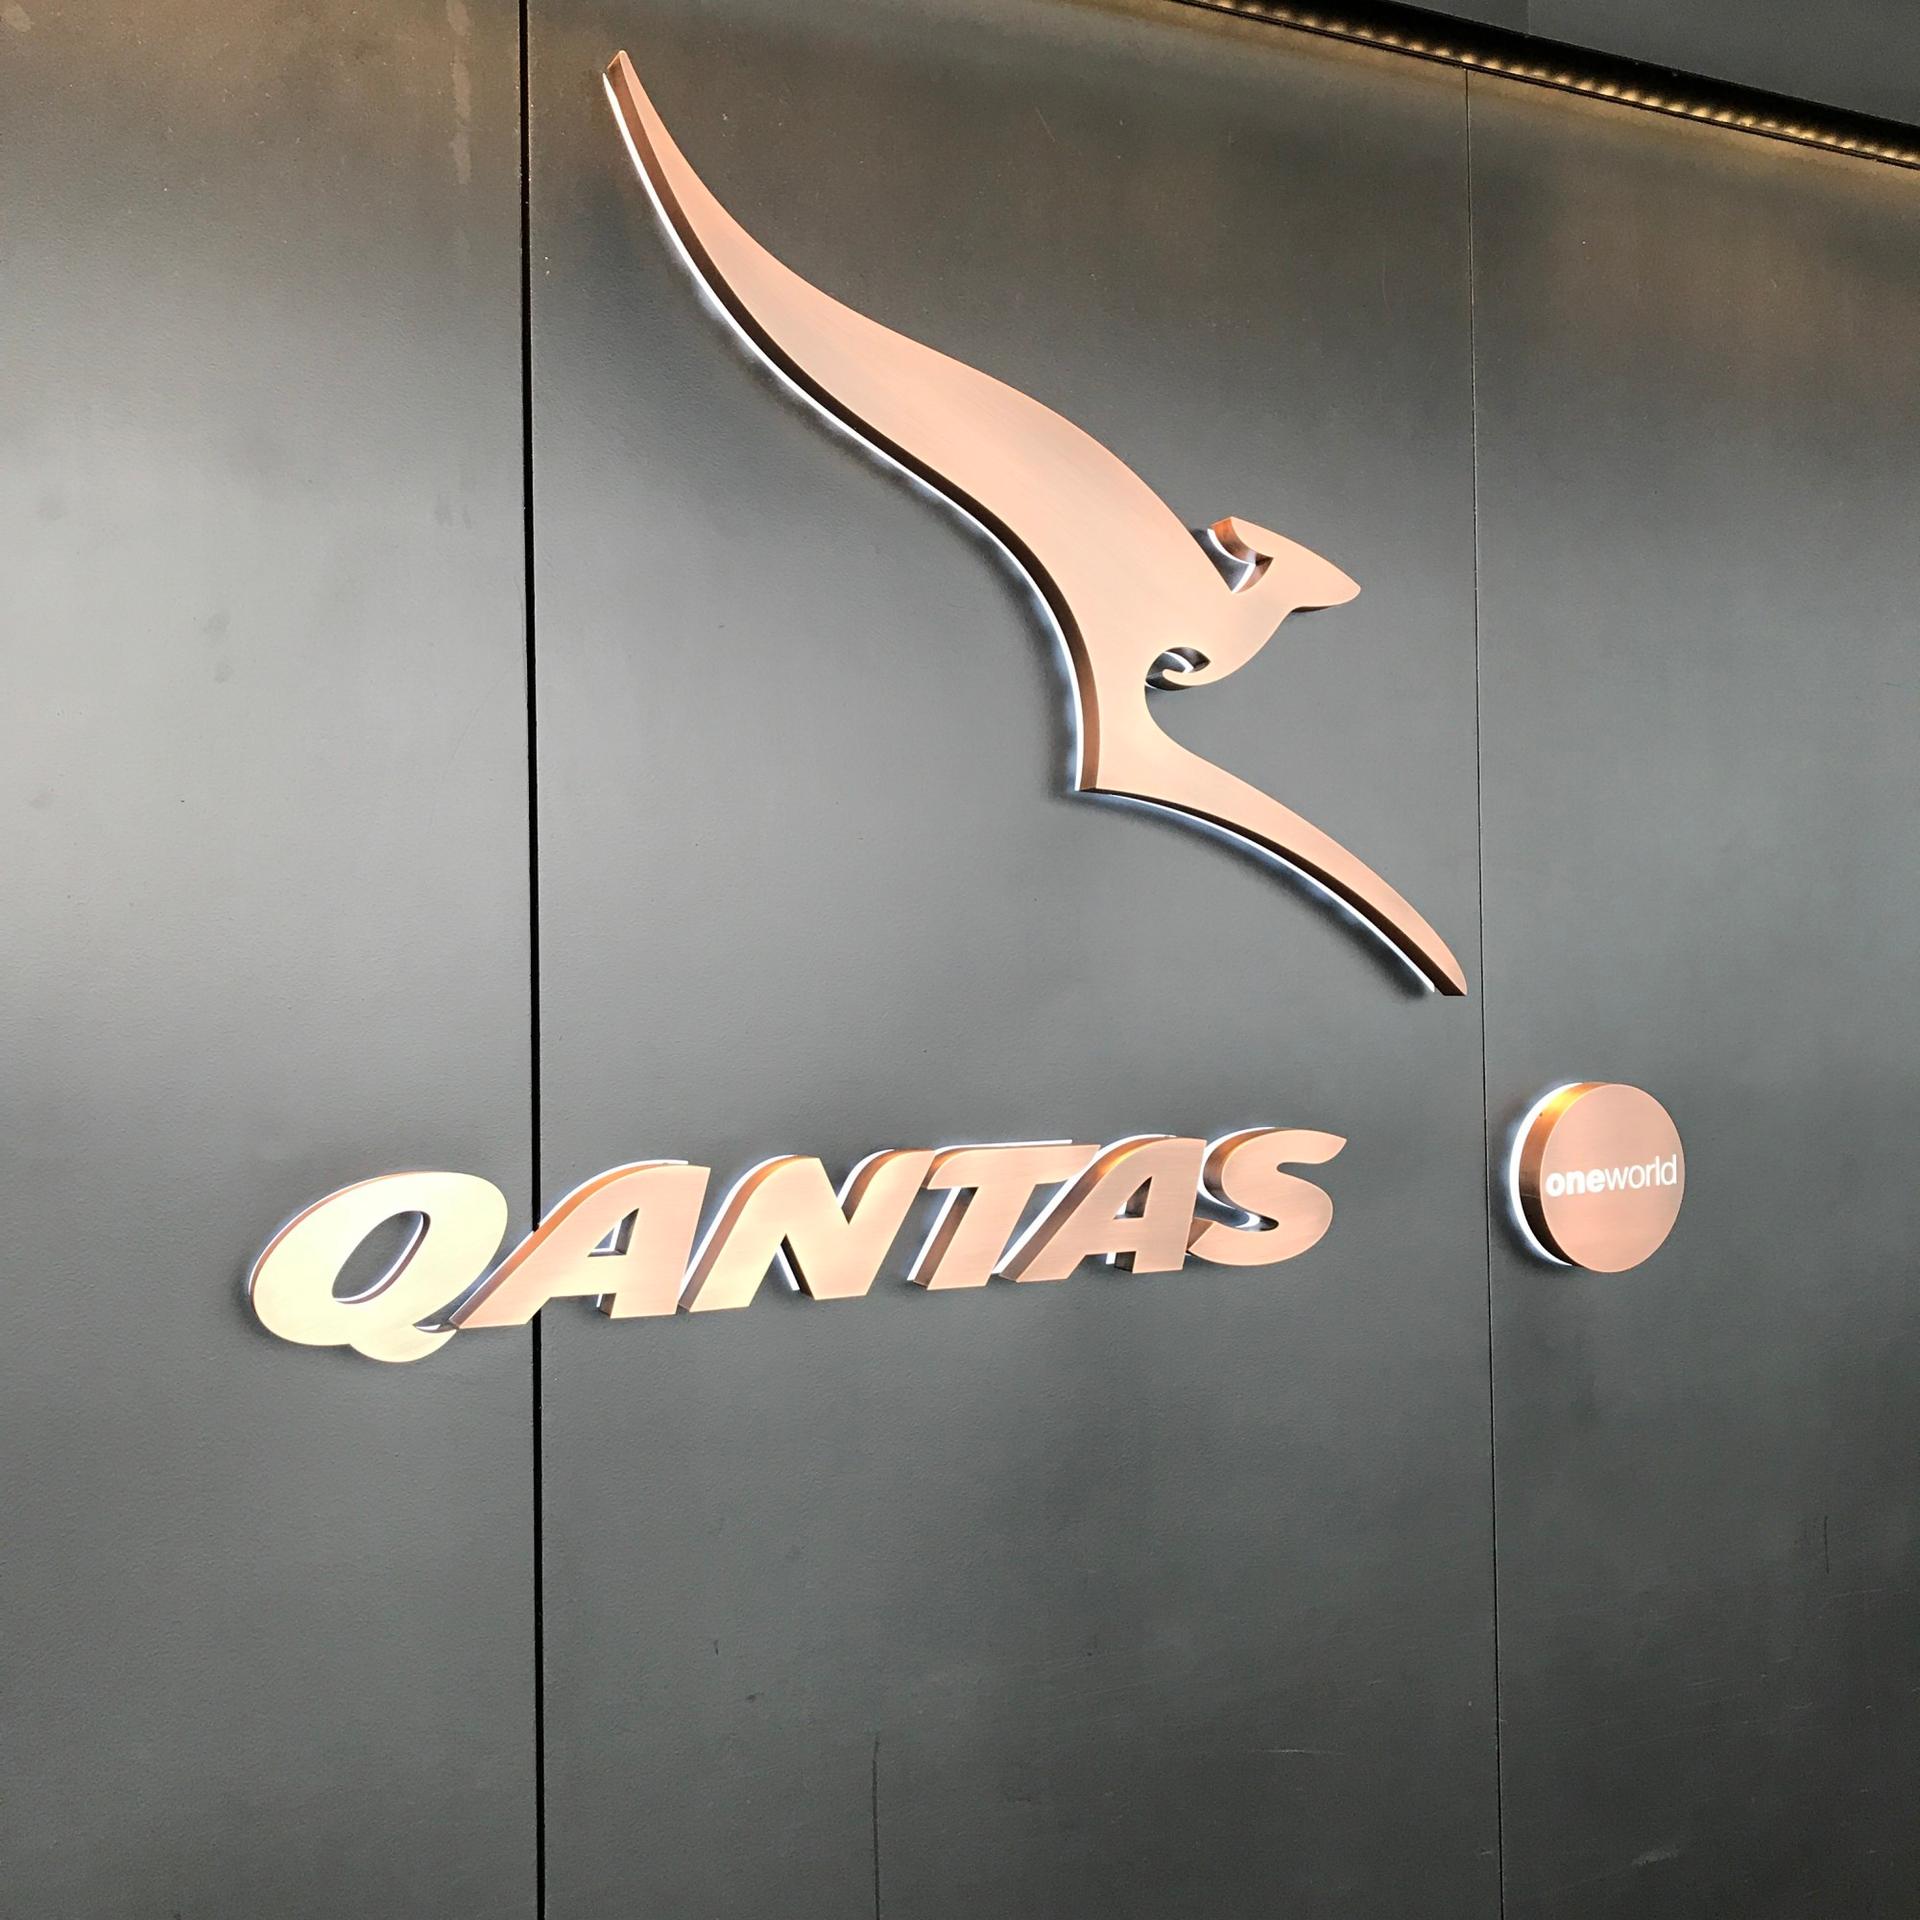 The Qantas Hong Kong Lounge image 70 of 99